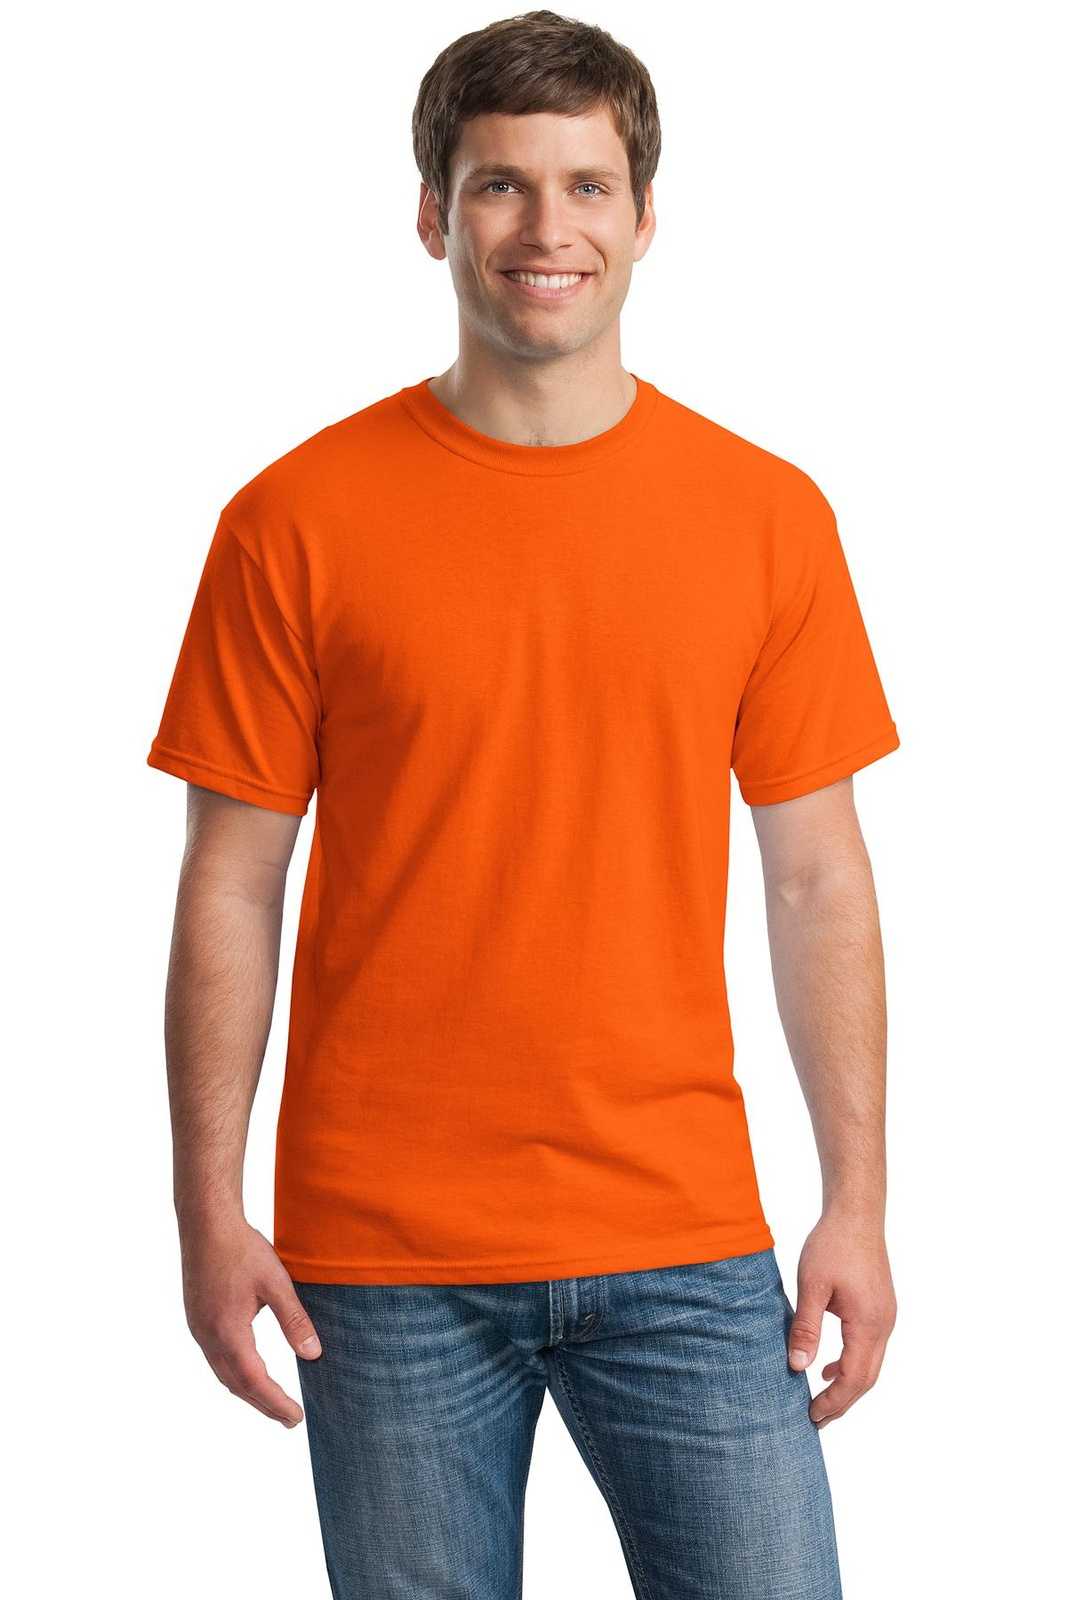 Gildan 5000 Heavy Cotton 100% Cotton T-Shirt - Orange - HIT a Double